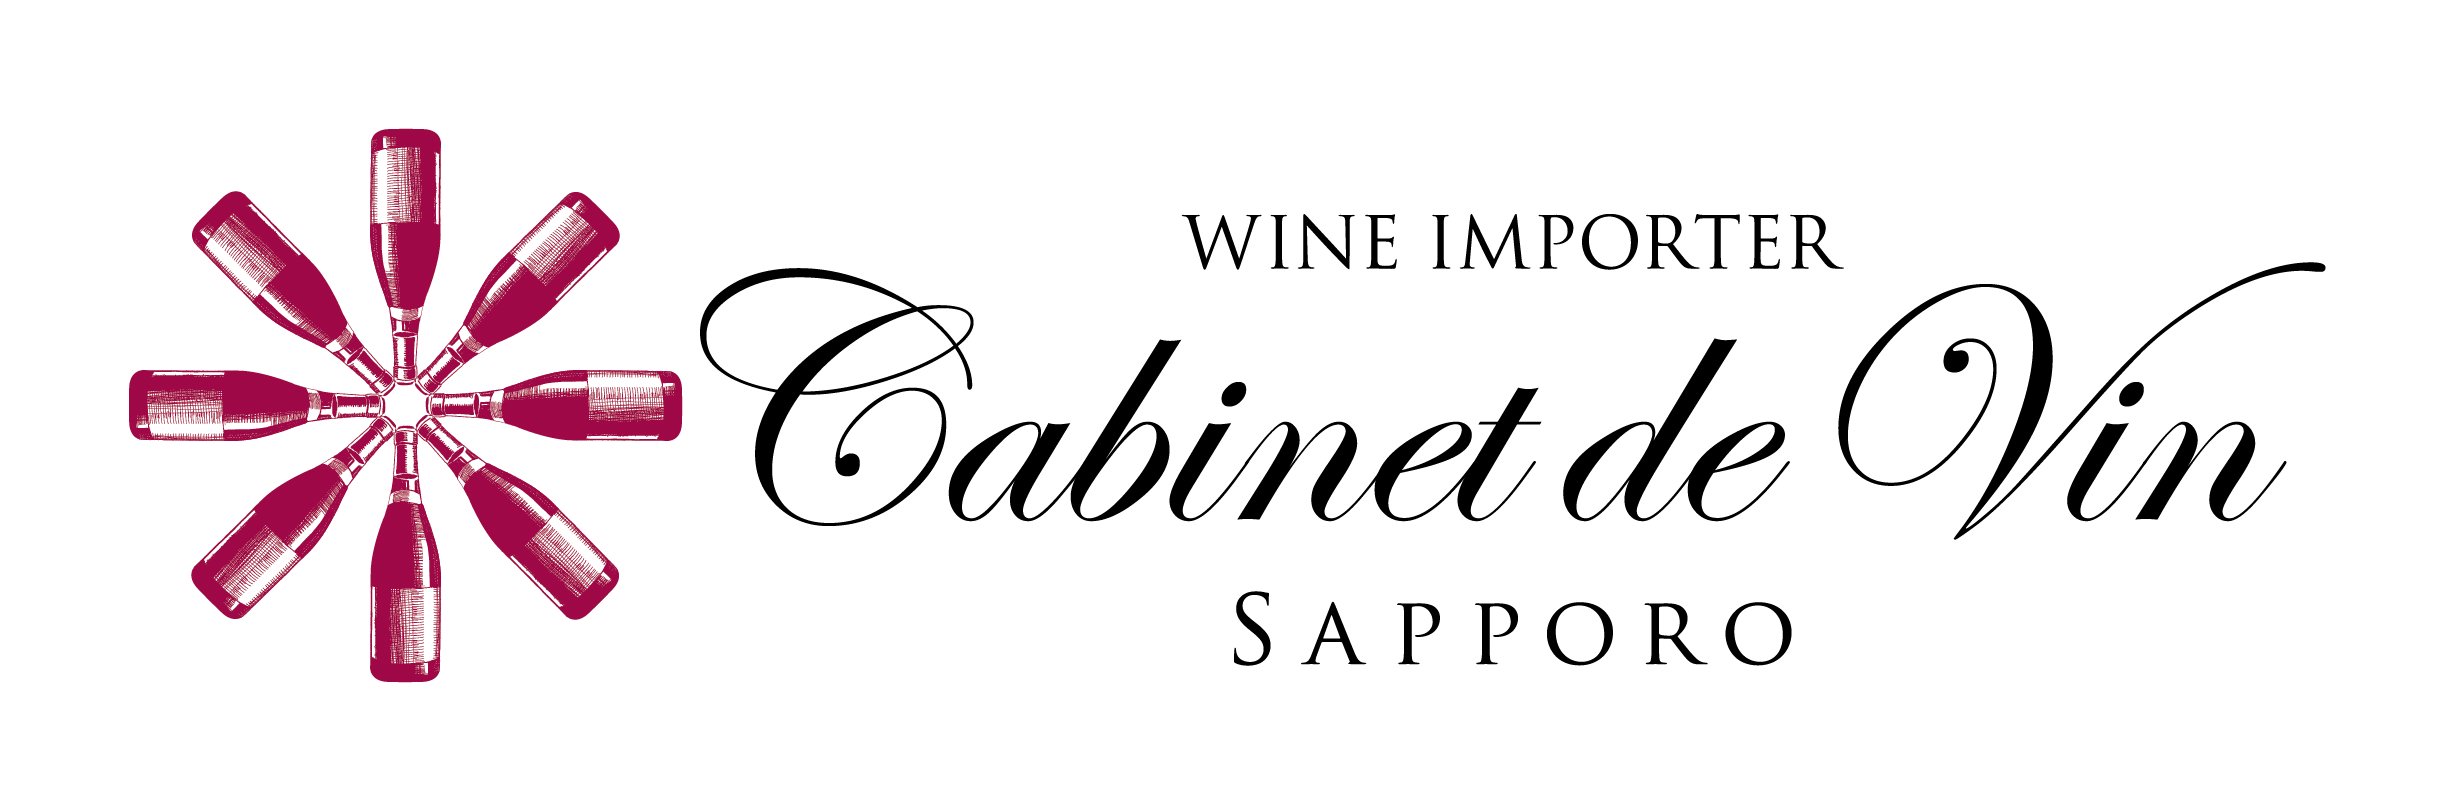 Cabinet de Vin Sapporo/キャビネ・ドゥ・ヴァン・サッポロ 【フランス・ロワール地方サントル・ロワール地区専門店 】　http://www.cabinetdevin-centre-loire.com/　自社輸入ワイン：ロワールワイン・ブルゴーニュワイン                                           